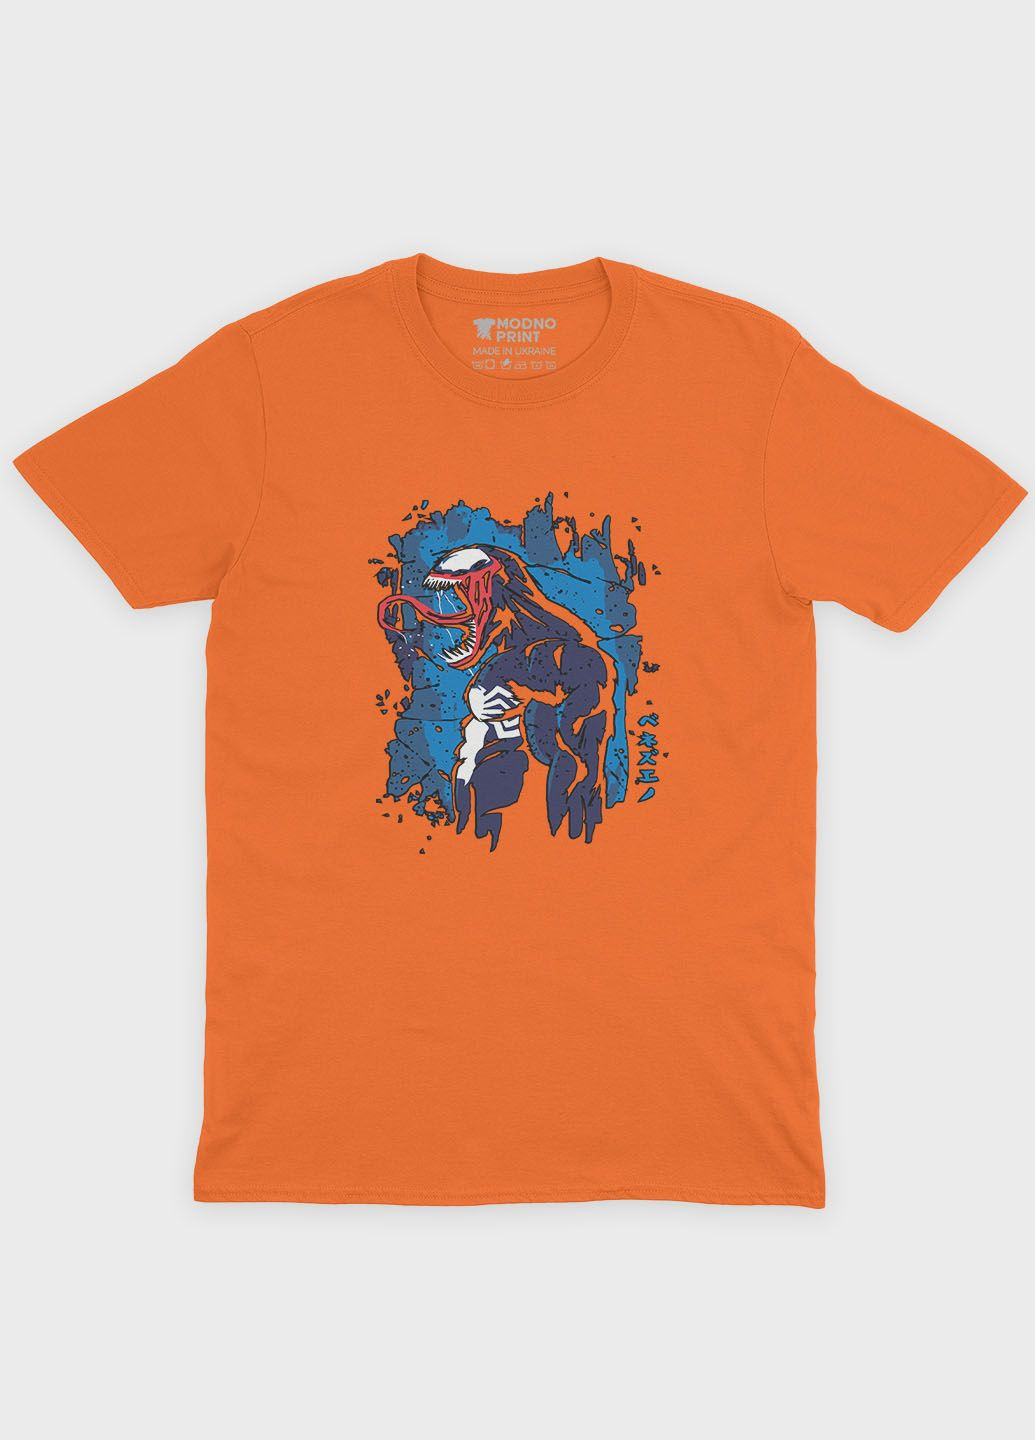 Помаранчева демісезонна футболка для хлопчика з принтом суперзлодія - веном (ts001-1-ora-006-013-014-b) Modno